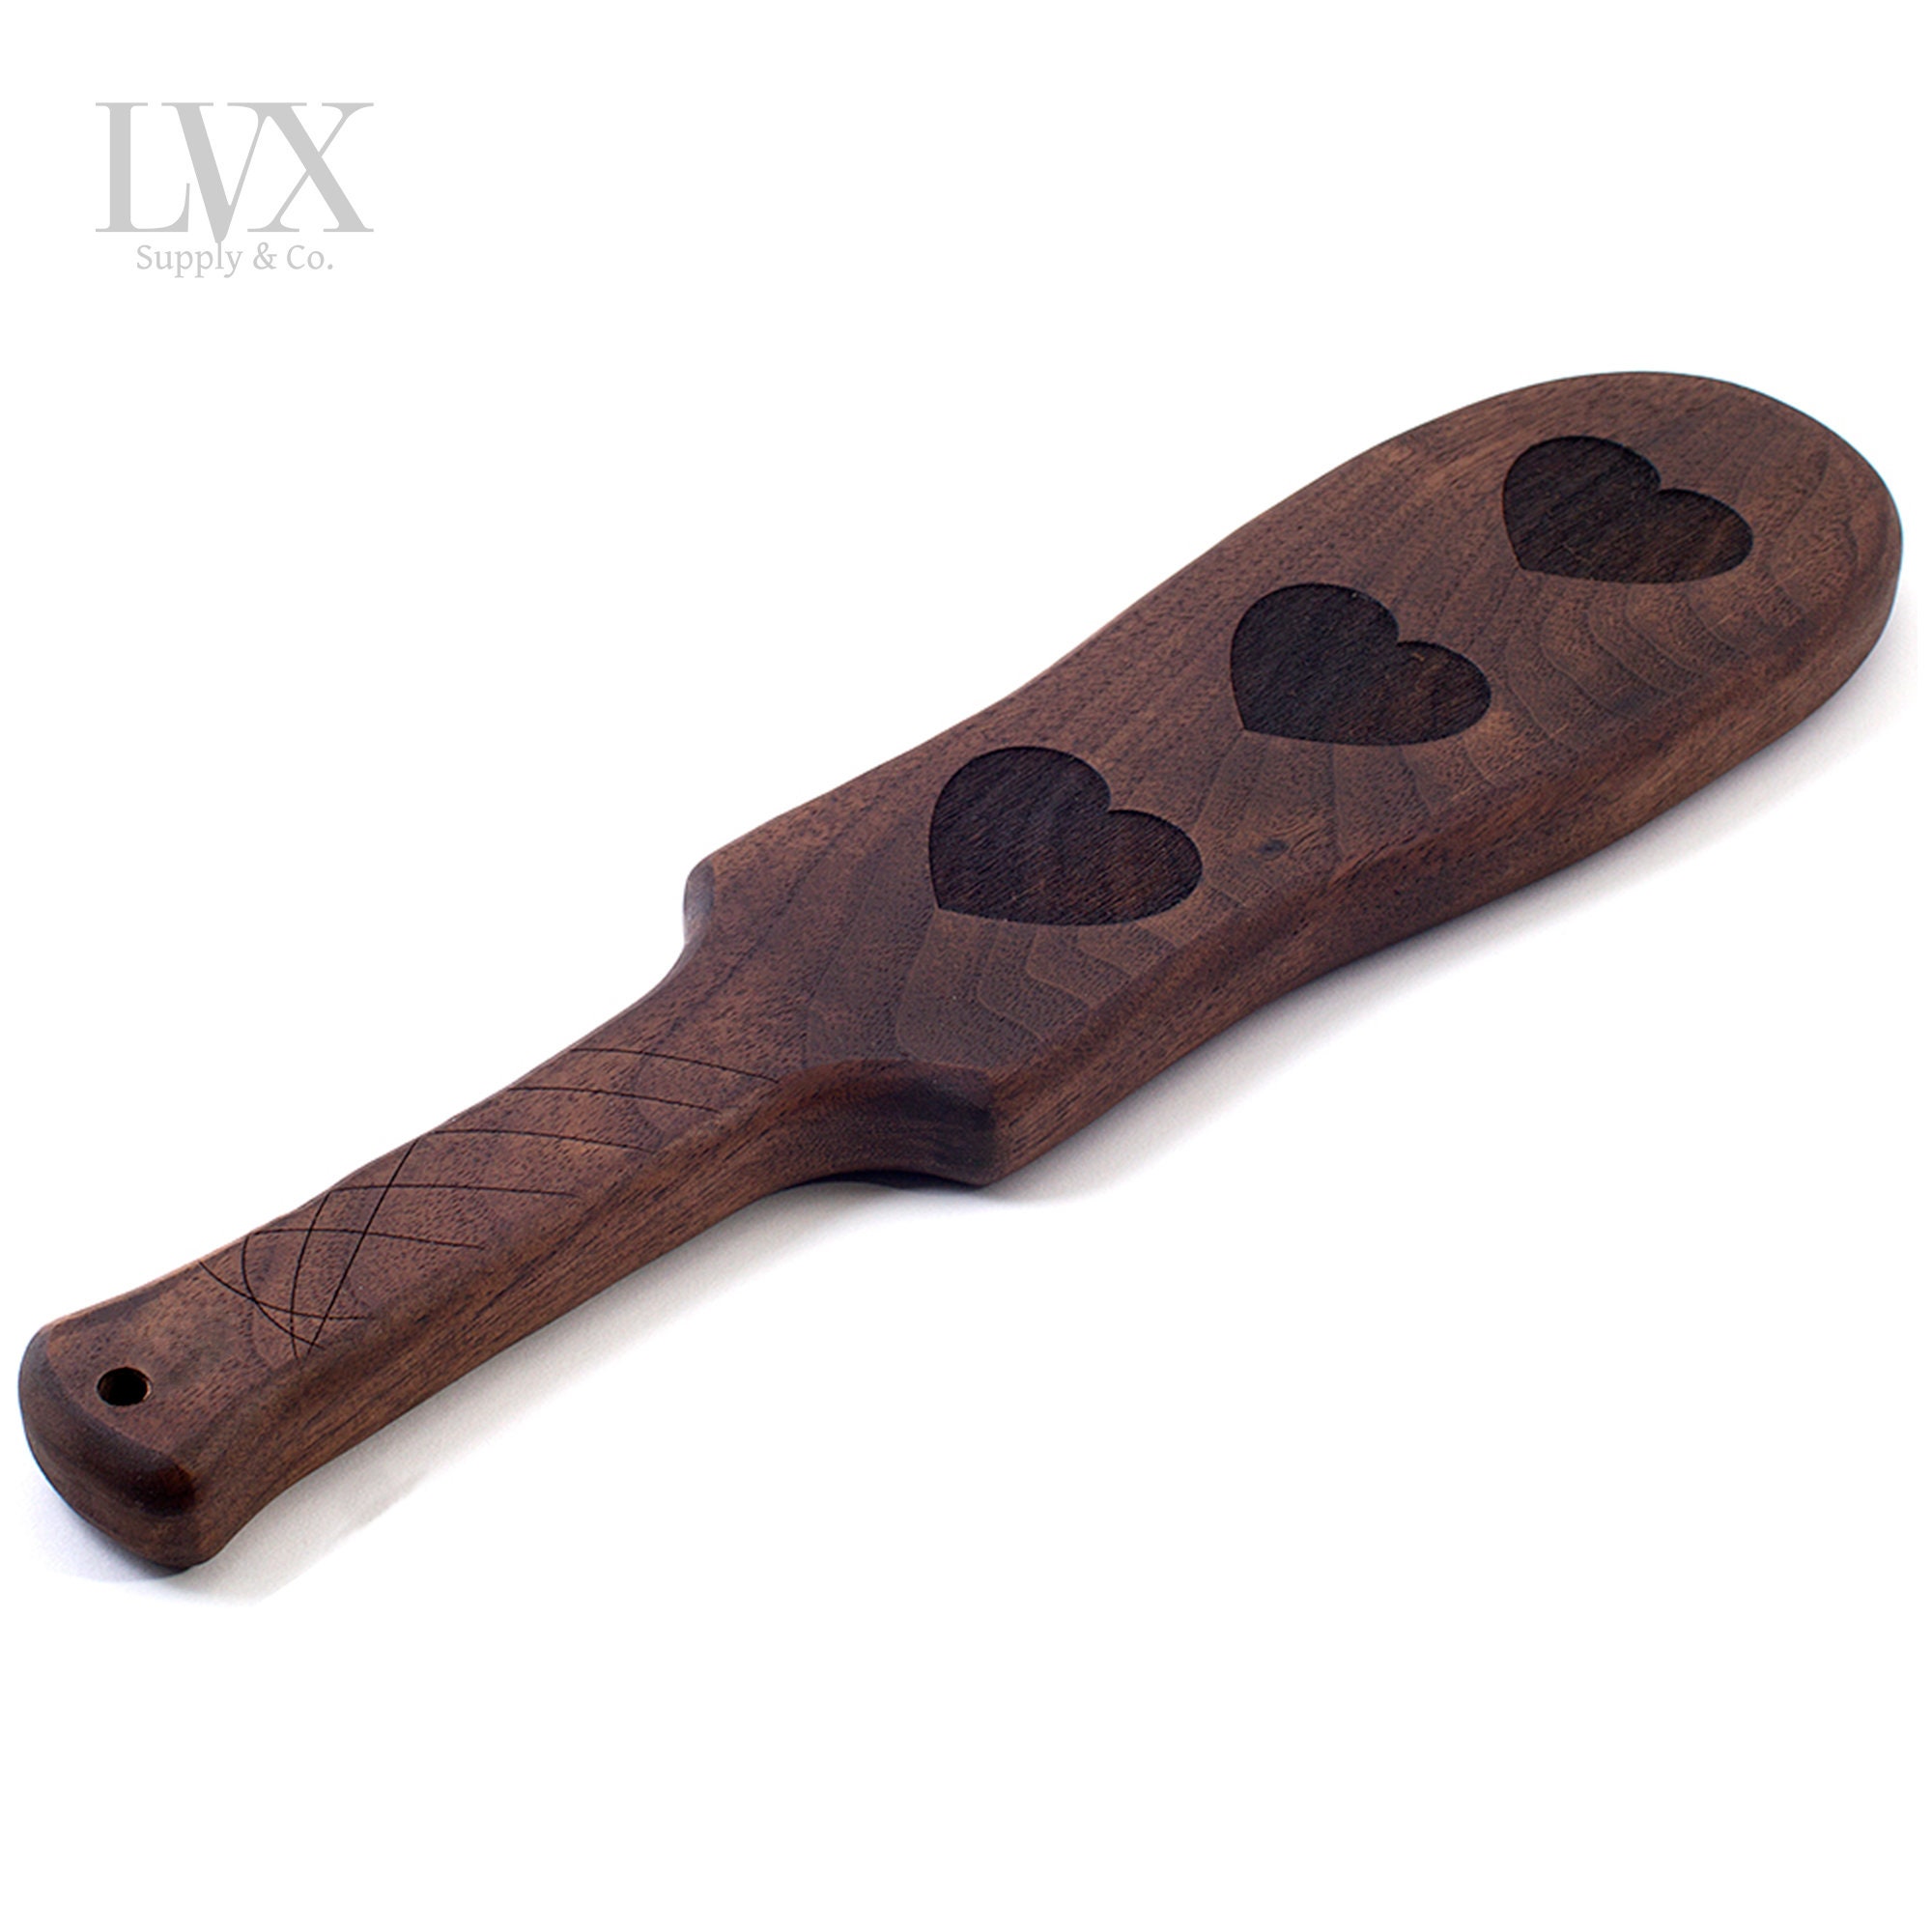 Studded Leather Spanking Paddle  BDSM Paddles by LVX Supply - LVX